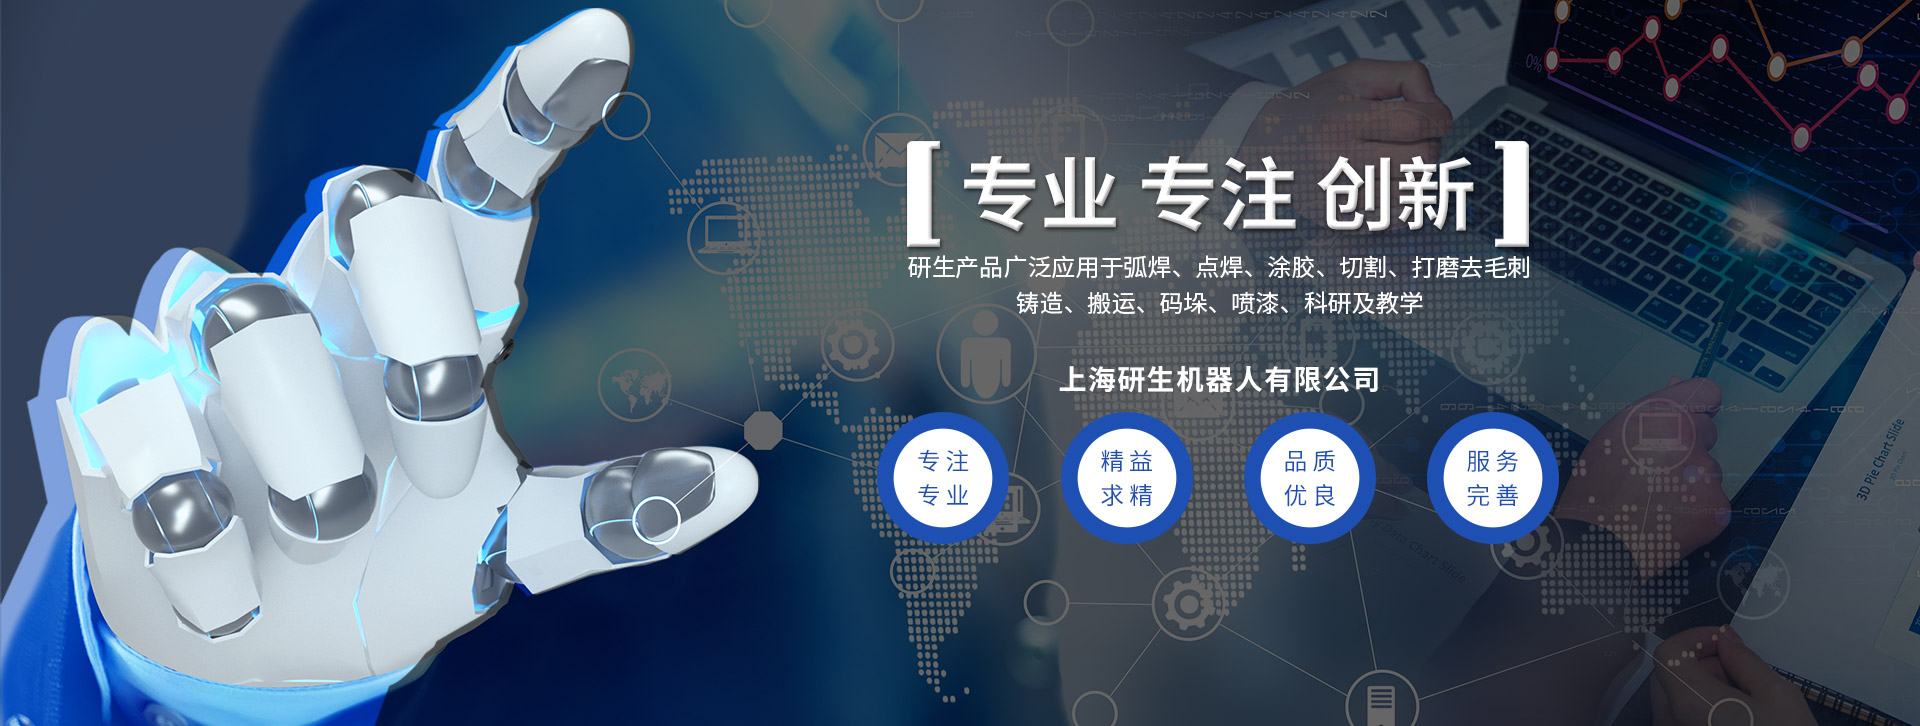 上海研生机器人有限公司